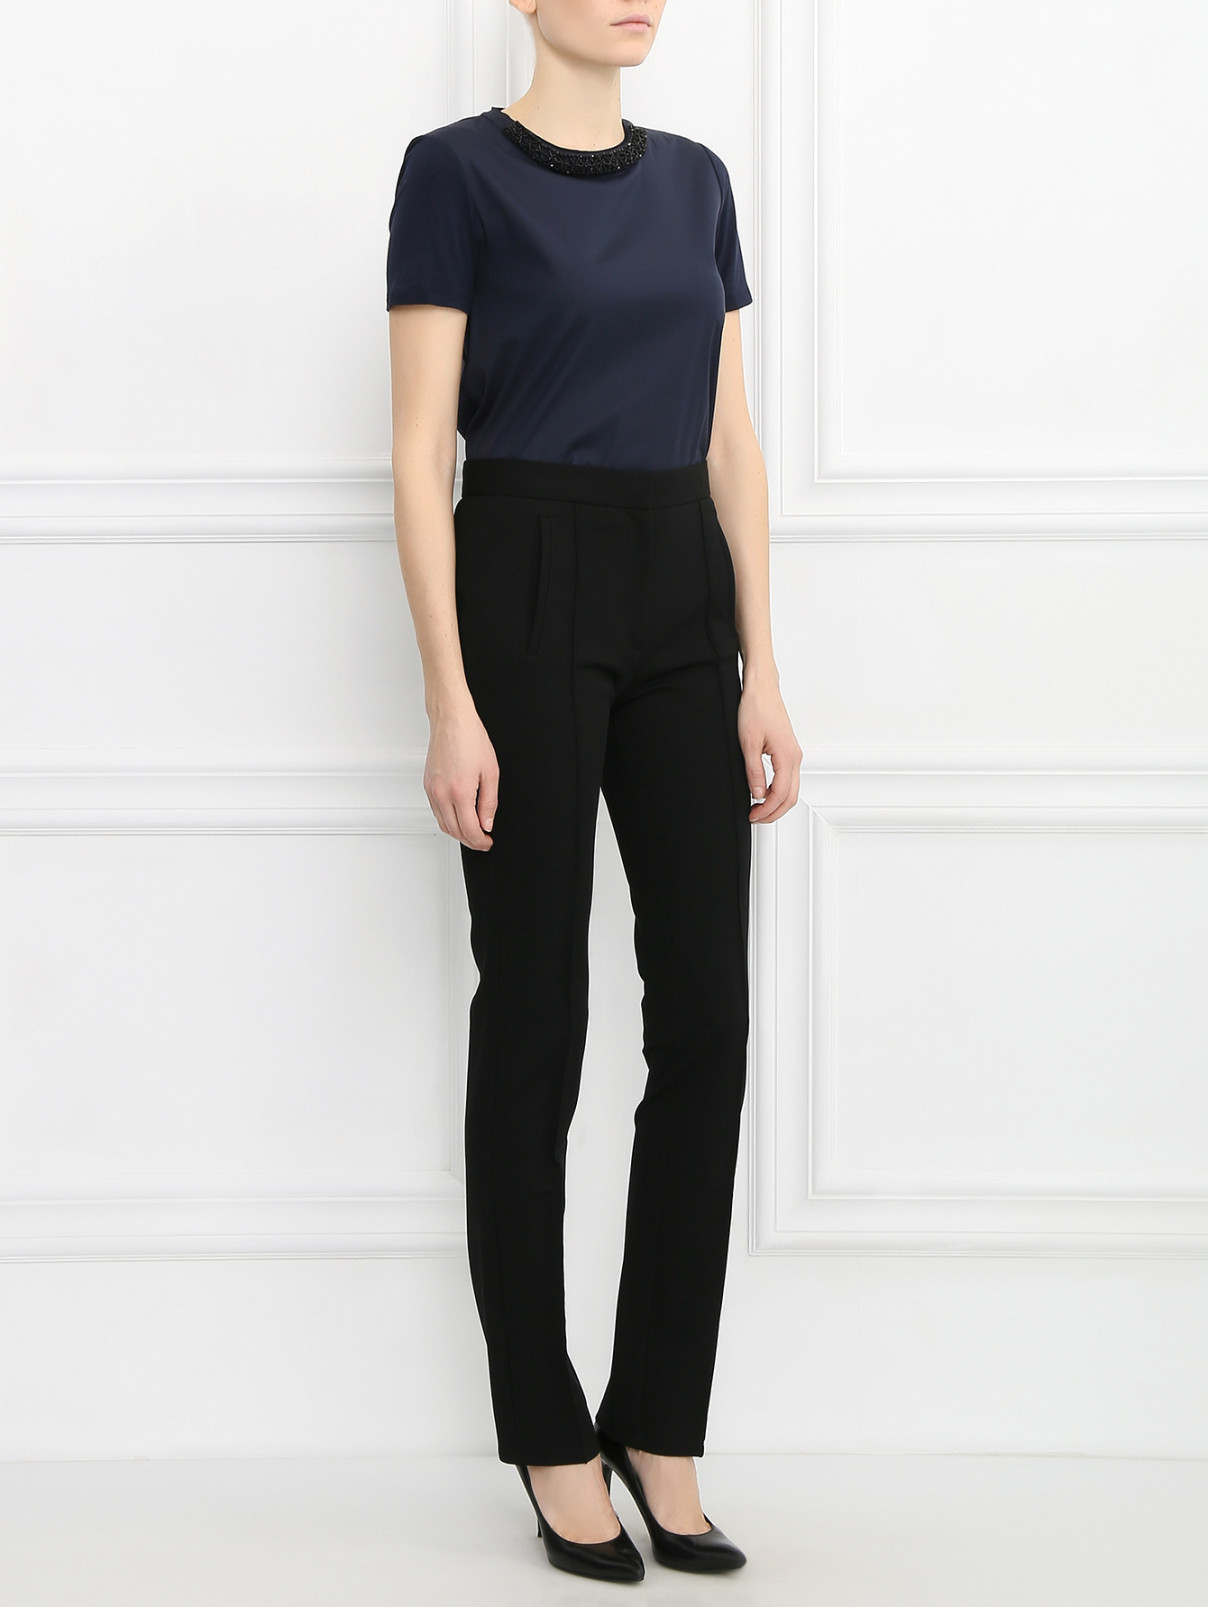 Узкие брюки Viktor&Rolf  –  Модель Общий вид  – Цвет:  Черный